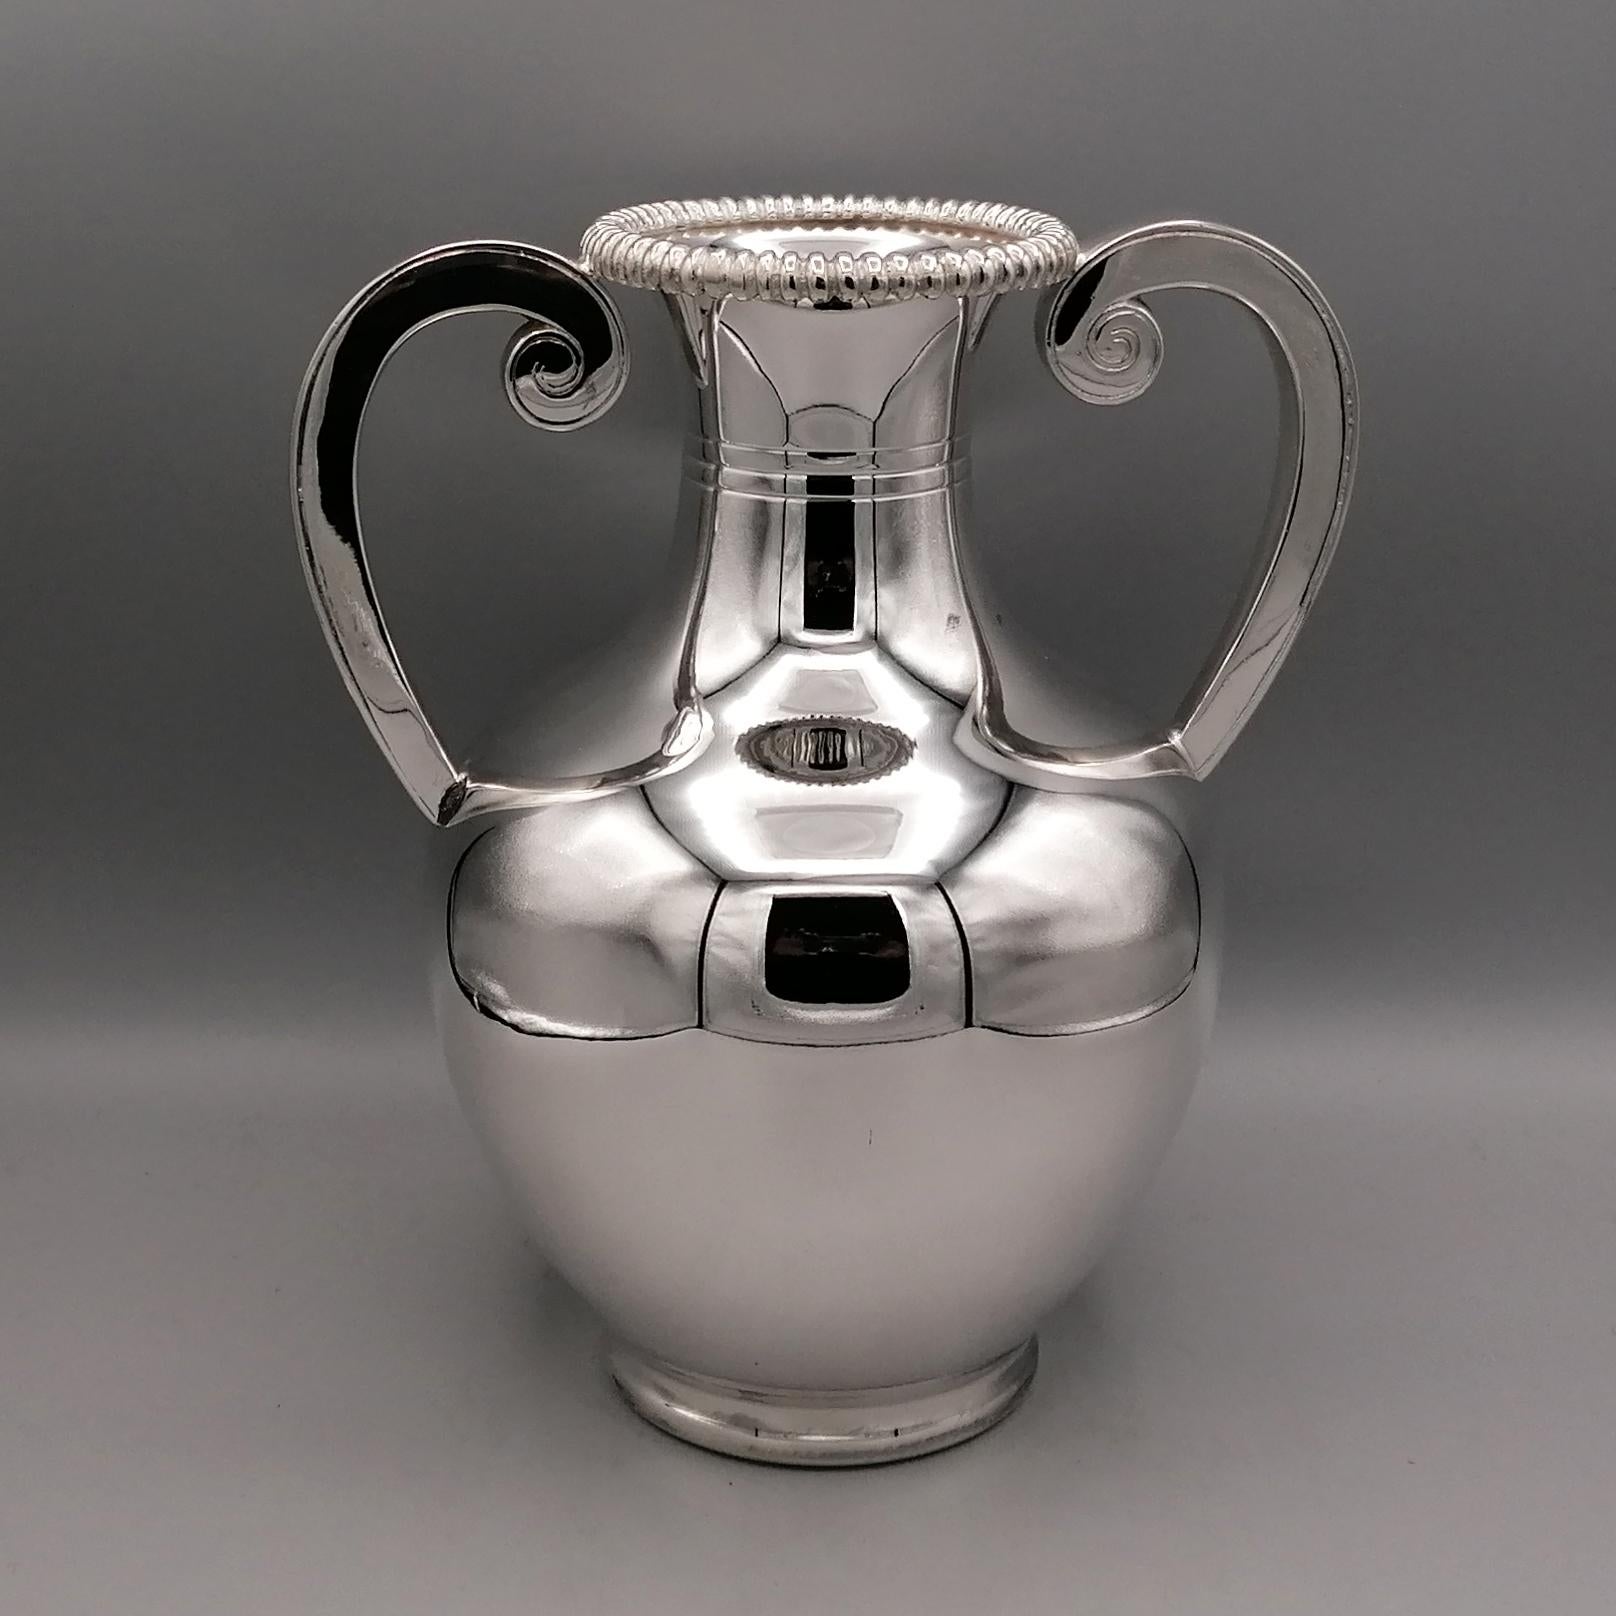 Vase Amphora avec anses en argent massif 800 dans le style néoclassique.
Le corps est rond, arrondi et complètement lisse. Ce n'est que sur le col de l'amphore que trois rainures ont été pratiquées pour rompre l'uniformité de la structure.
Une